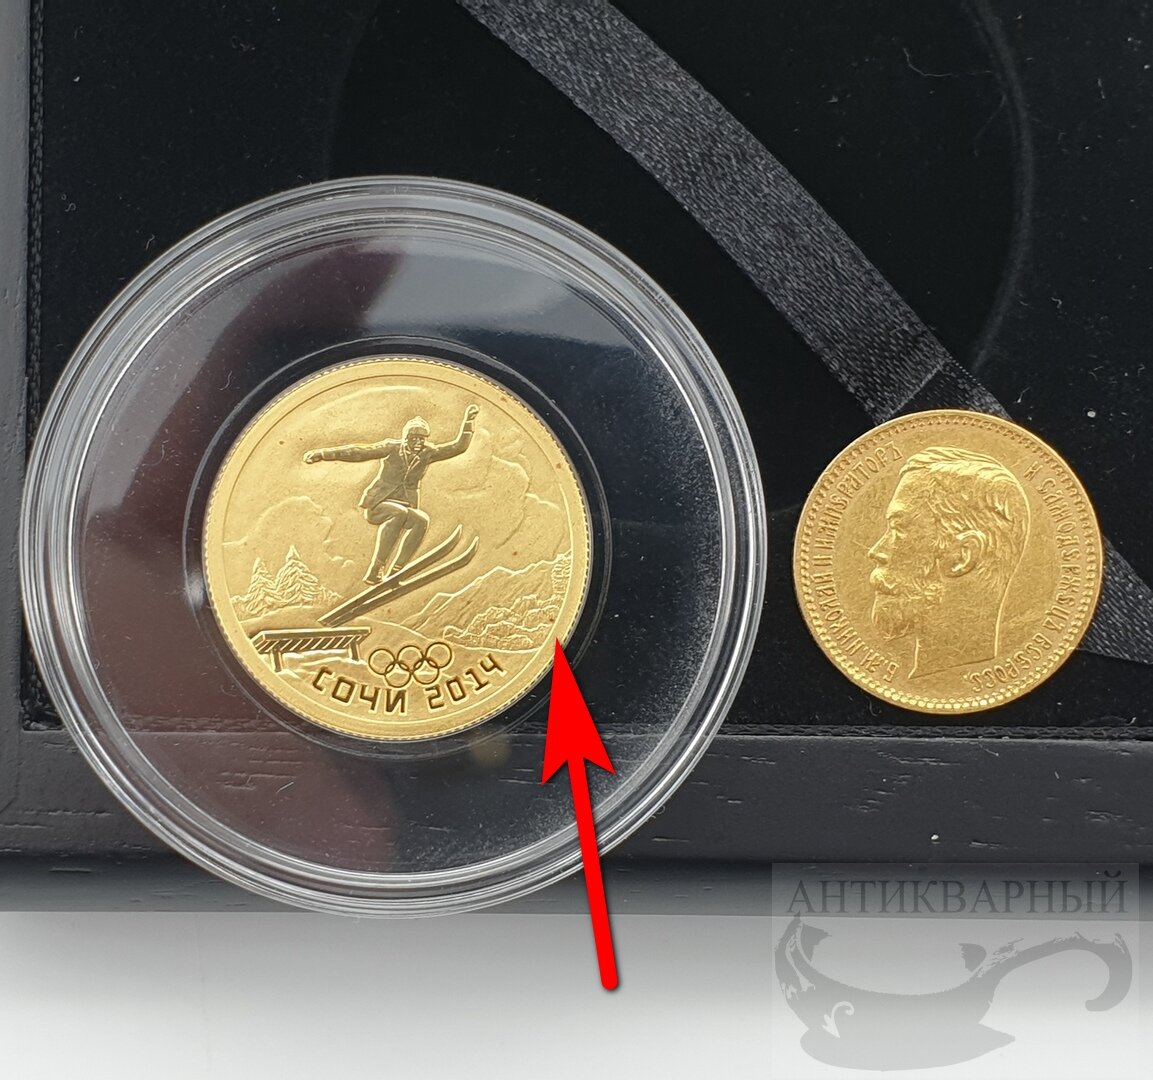 Сайт сбербанка монеты. Золотые инвестиционные монеты. Сувенирные монеты Сбербанка. Коллекционные золотые монеты. Современные золотые монеты.